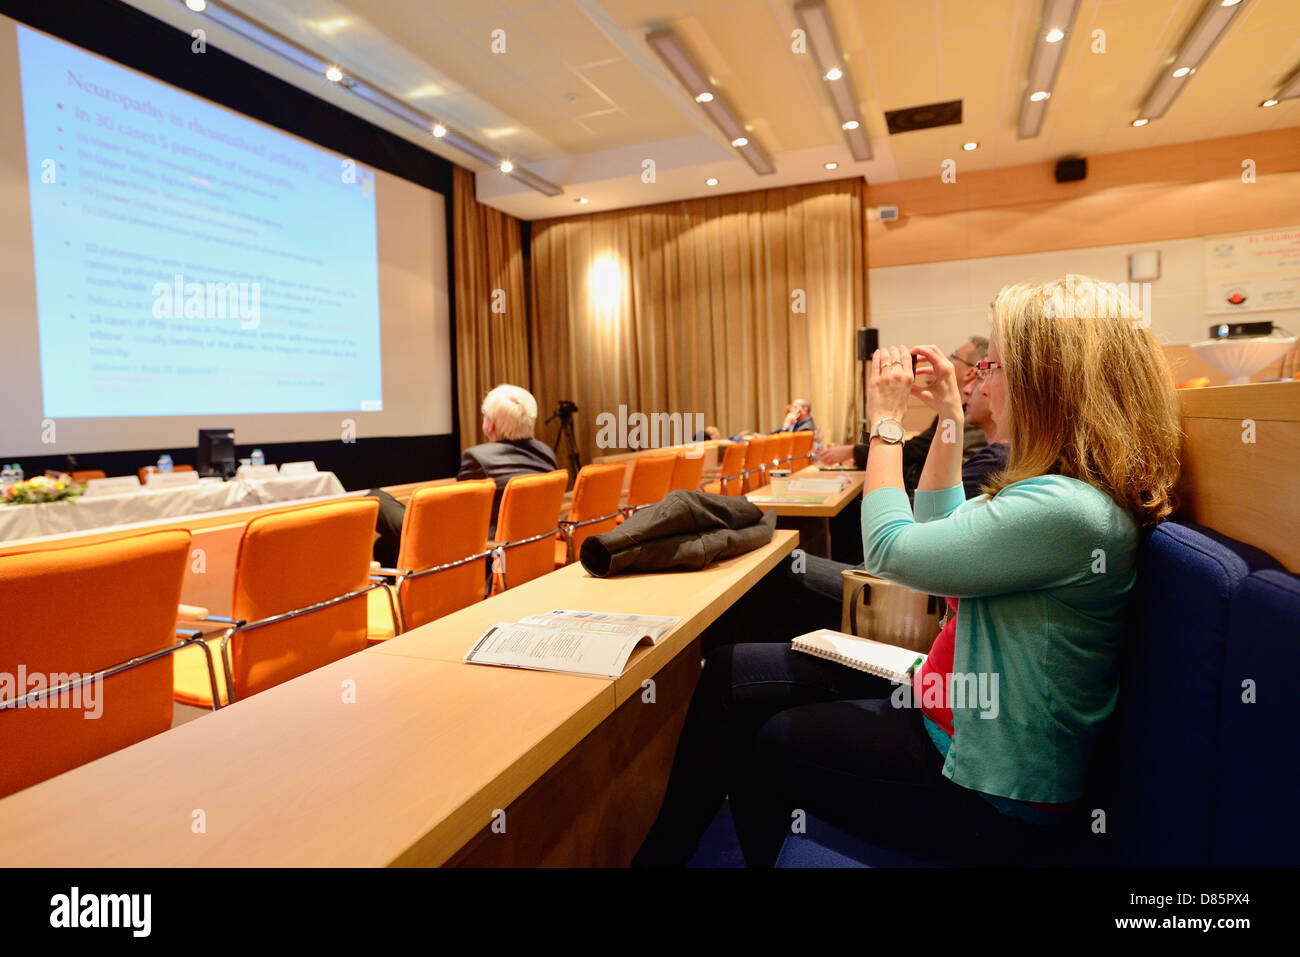 Femme à prendre des photos avec son téléphone mobile pendant une présentation de conférence Banque D'Images